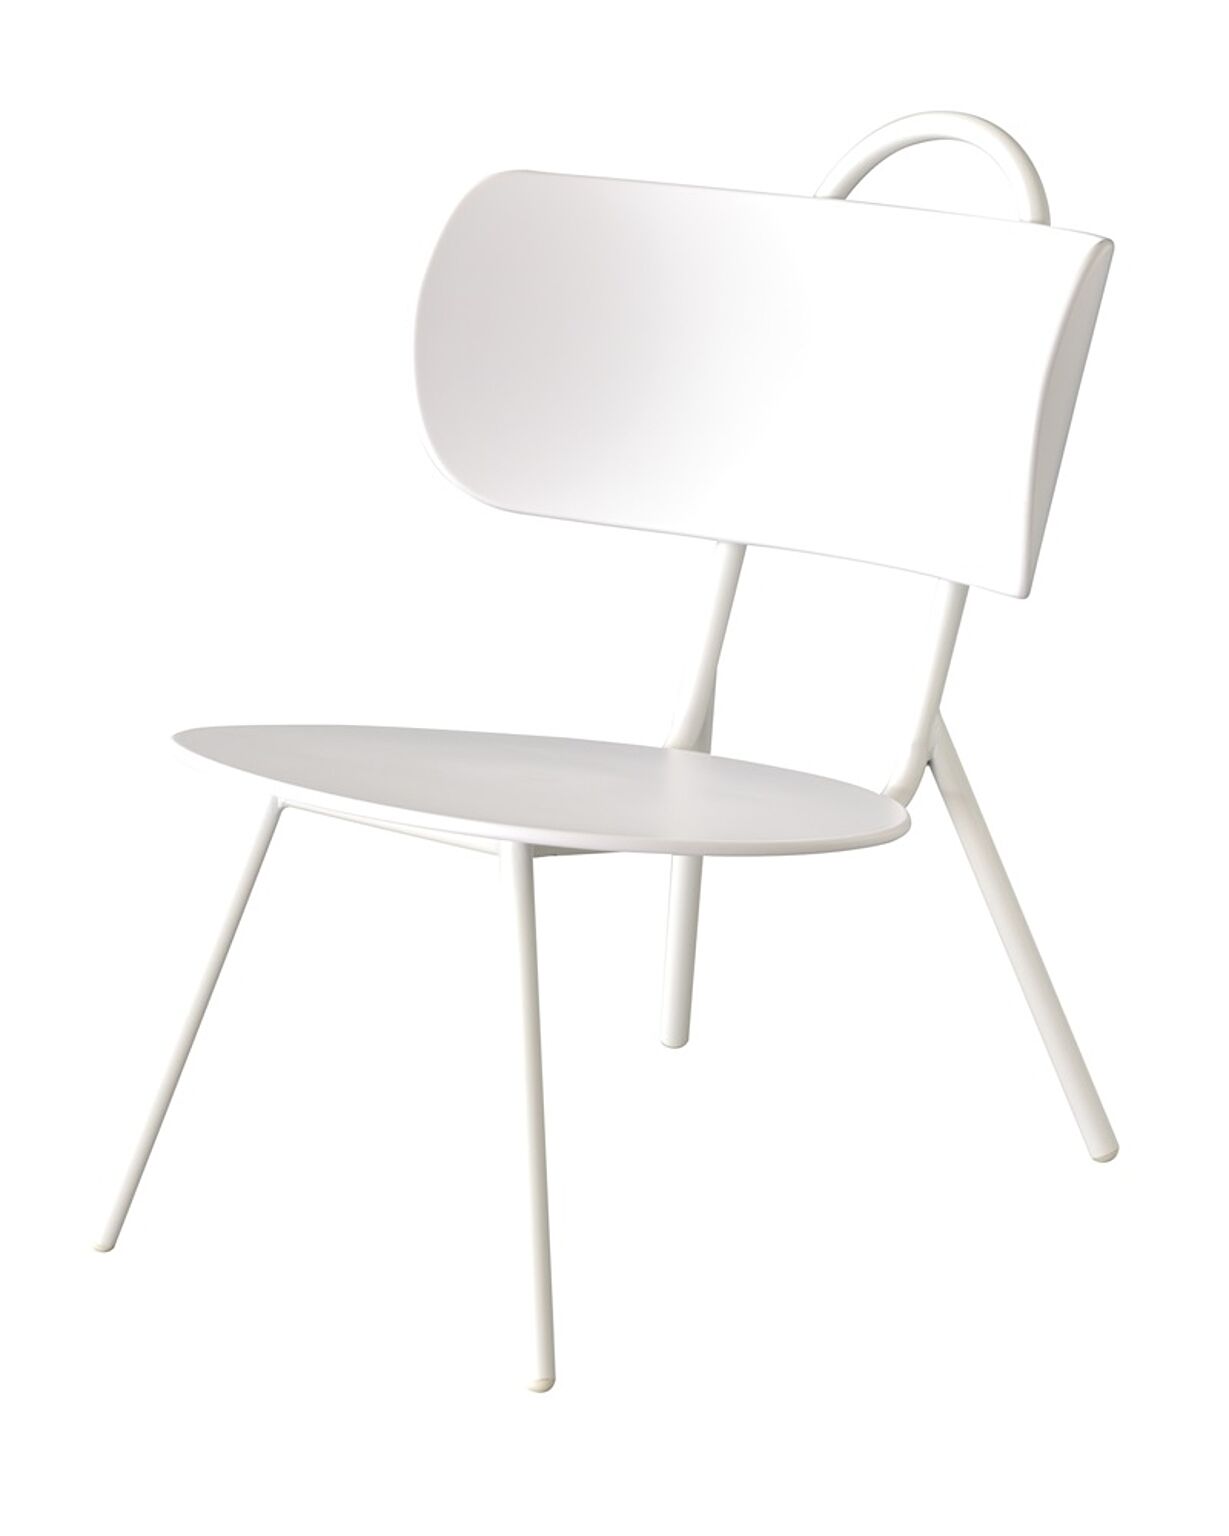 マオリ ローチェア W57×D70×H71×SH36.5 ホワイト チェア 椅子 いす ローチェア 低め ポリプロピレン 座面広め 直径49cm 背もたれ付き くつろぎ ゆったり かわいい 